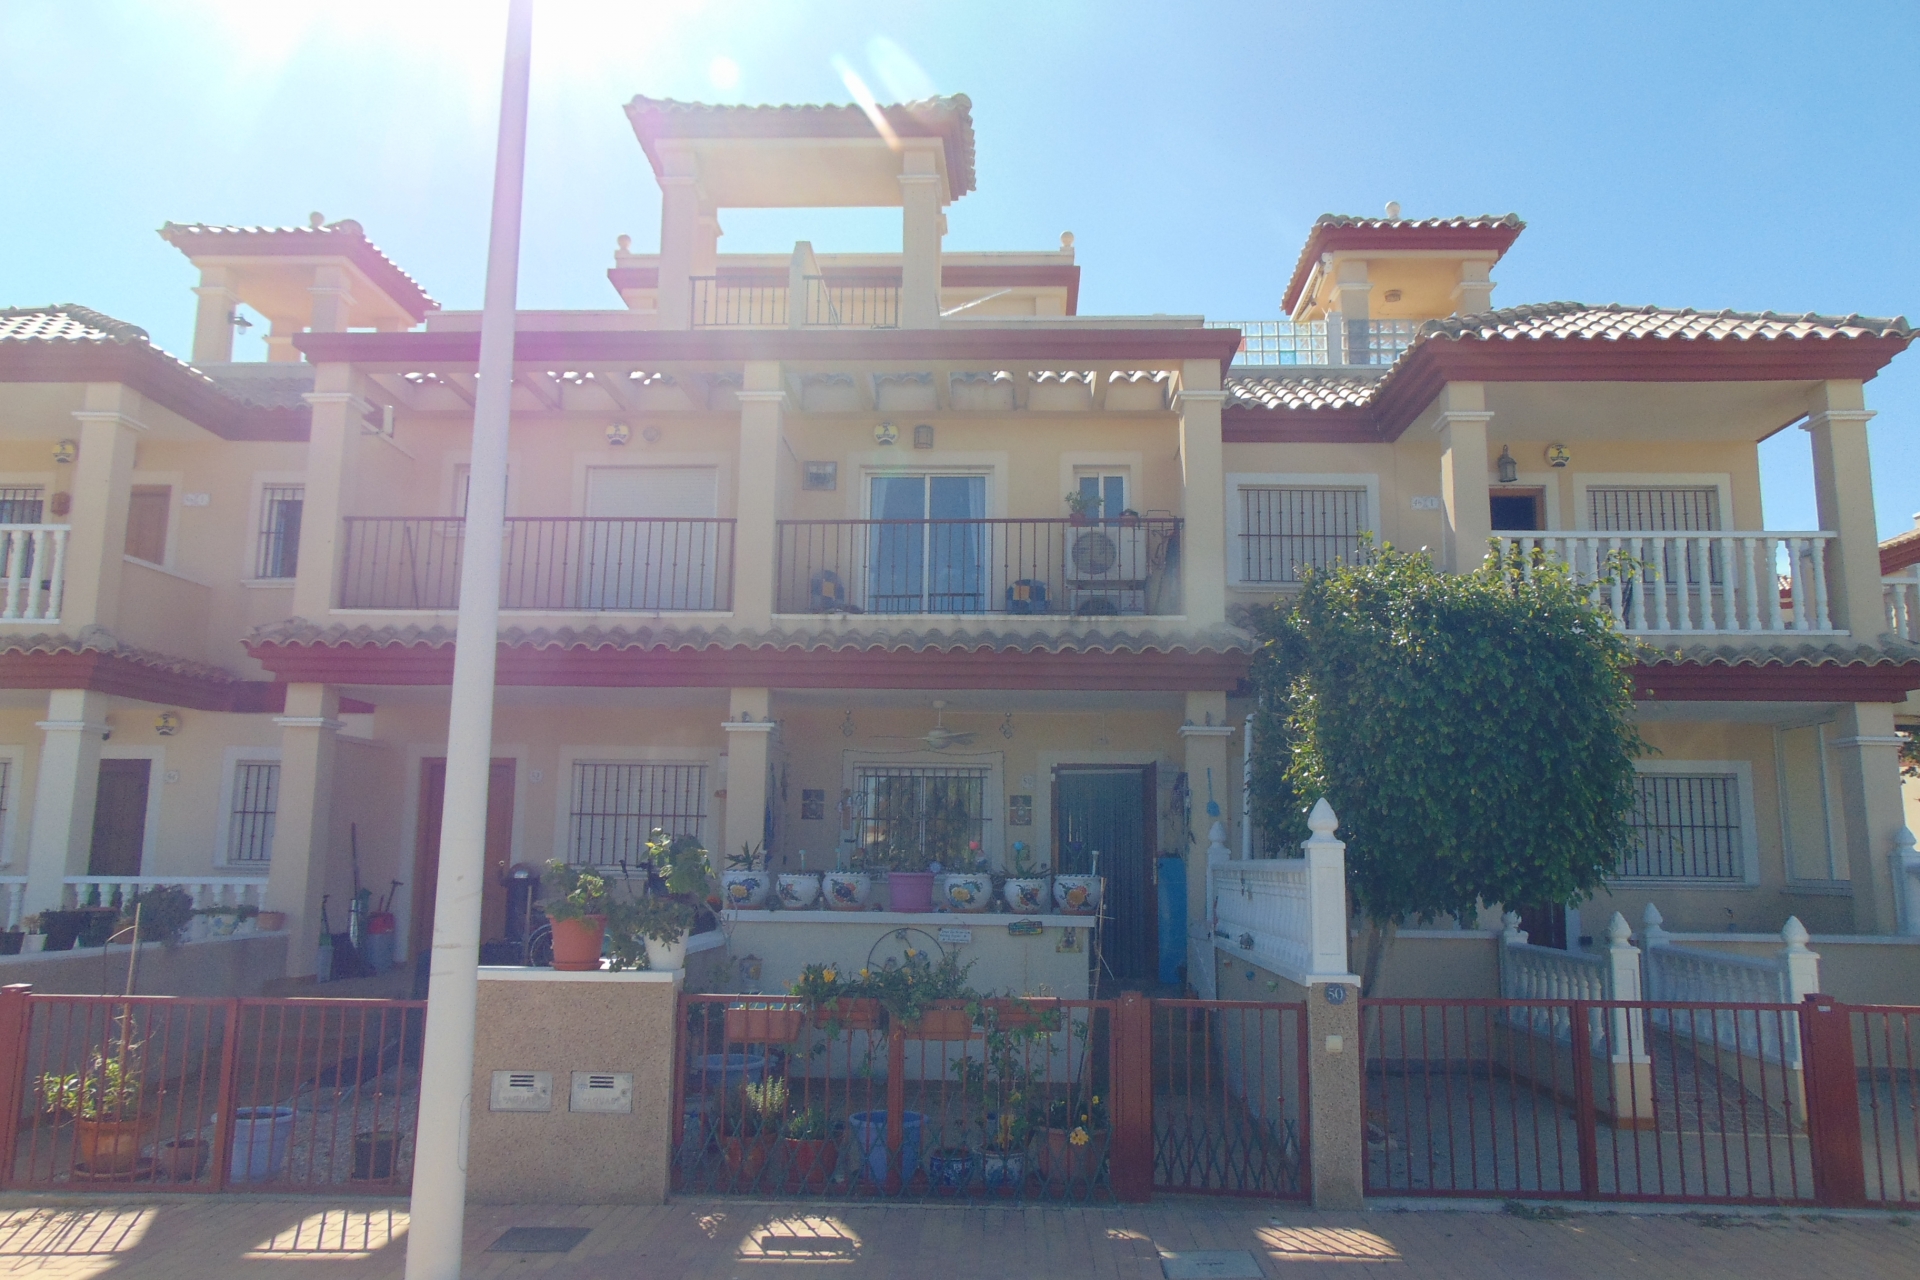 Archivé - Townhouse for sale - San Pedro del Pinatar